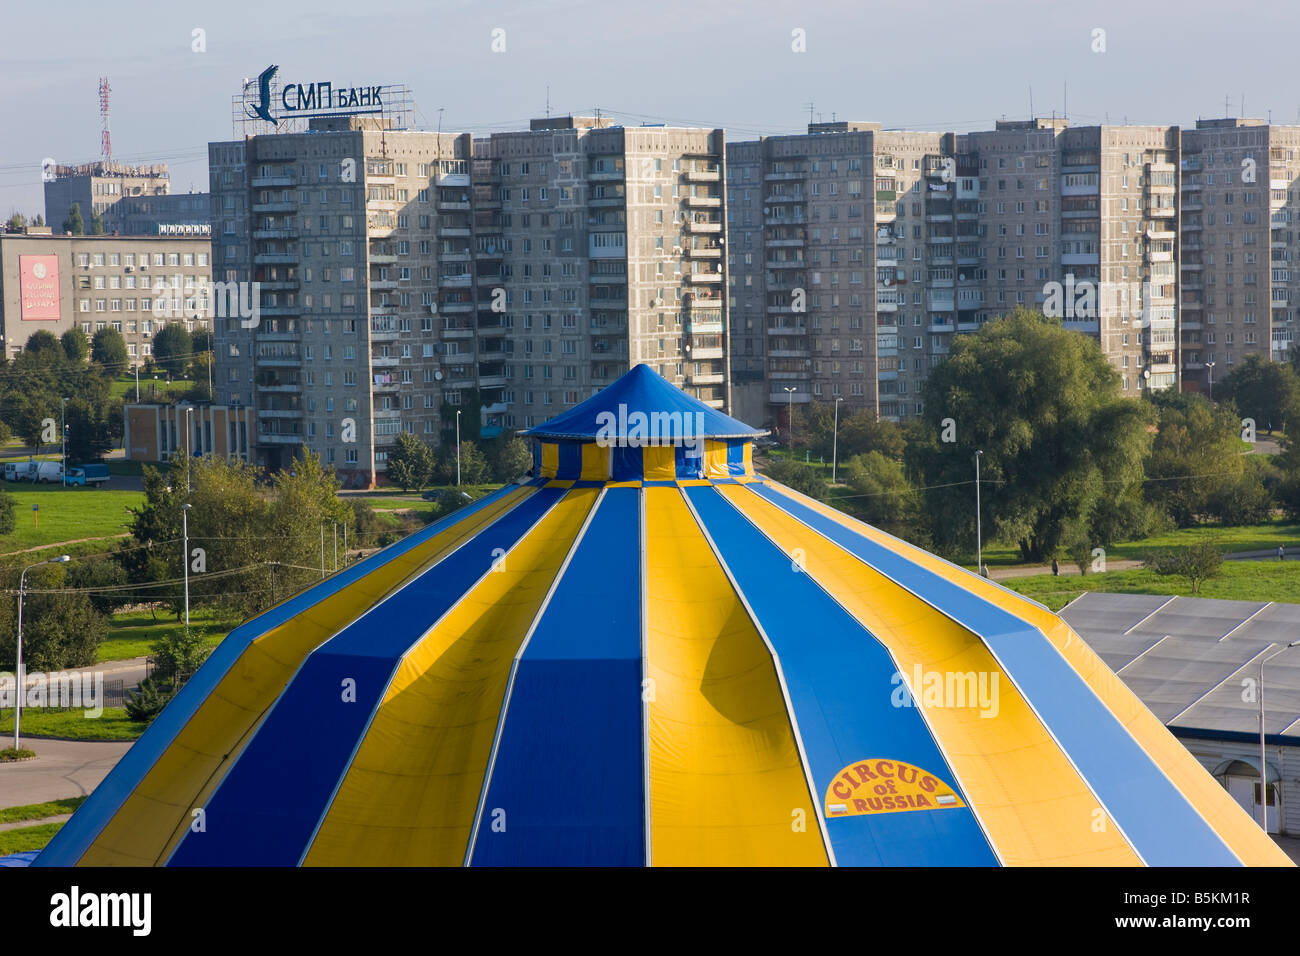 La Russie, Kaliningrad, Konigsberg, Cirque russe haut élevé parmi les tours d'habitation de l'ère soviétique Banque D'Images